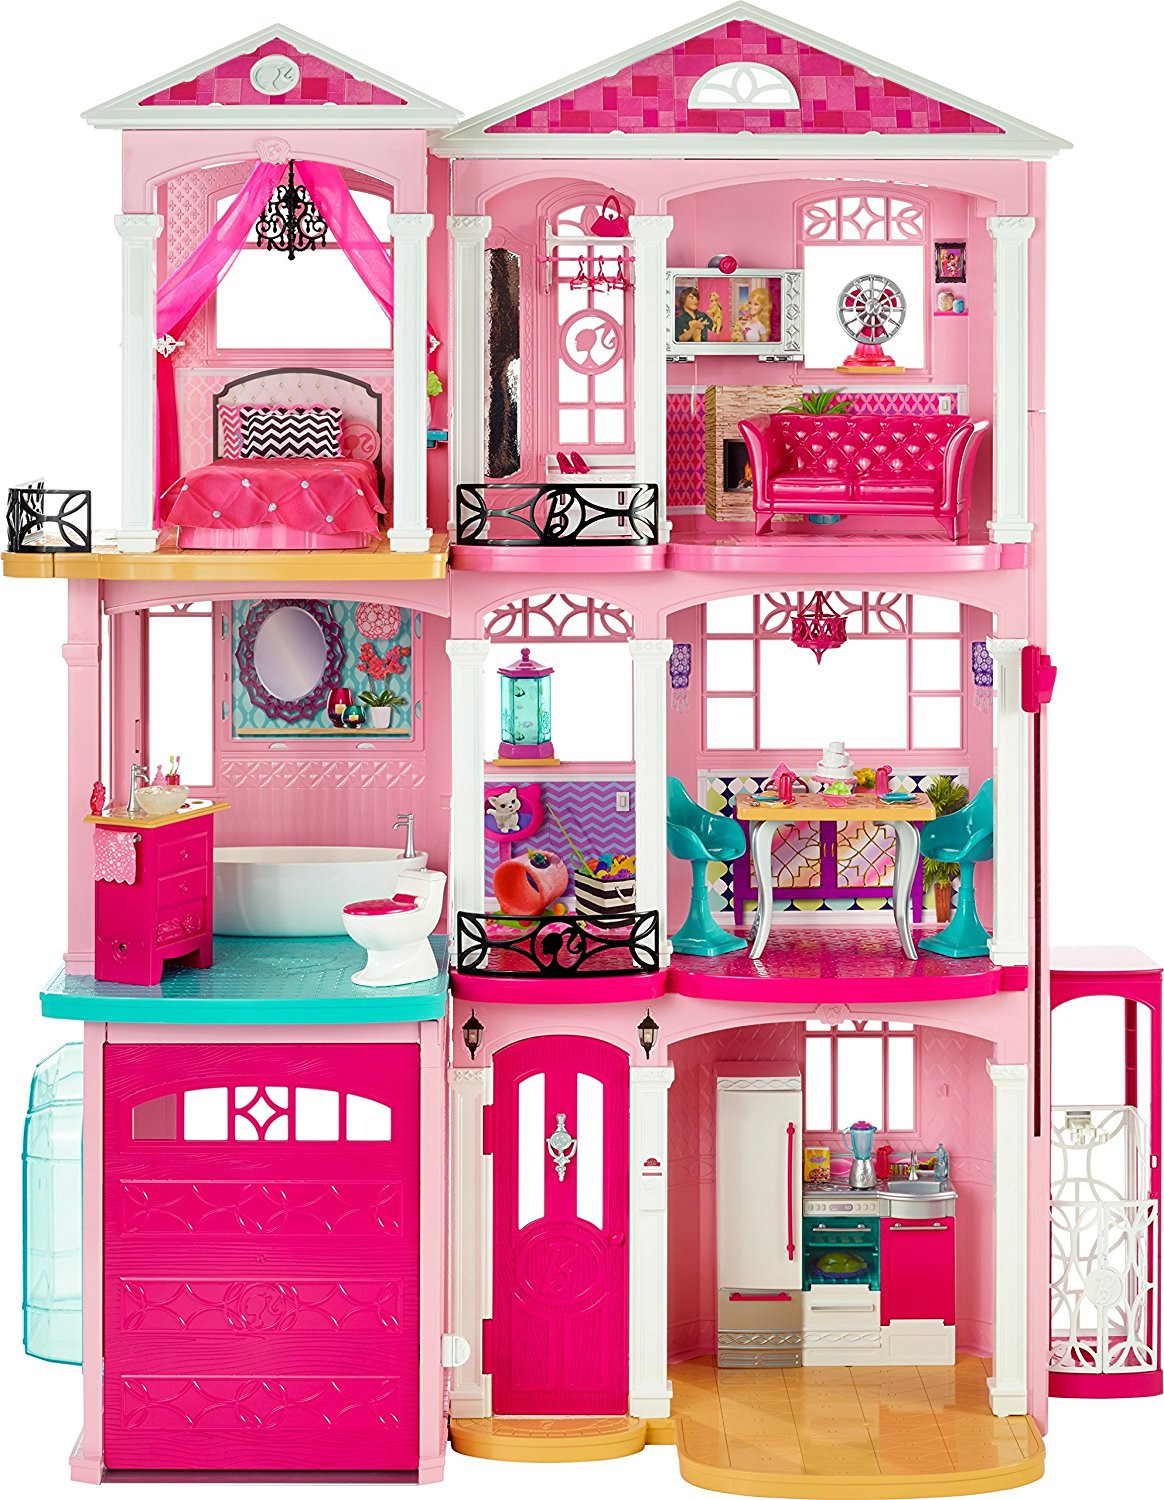 hardwood flooring durham ontario of amazon com barbie dreamhouse toys games within 91ou1tumyjl sl1500